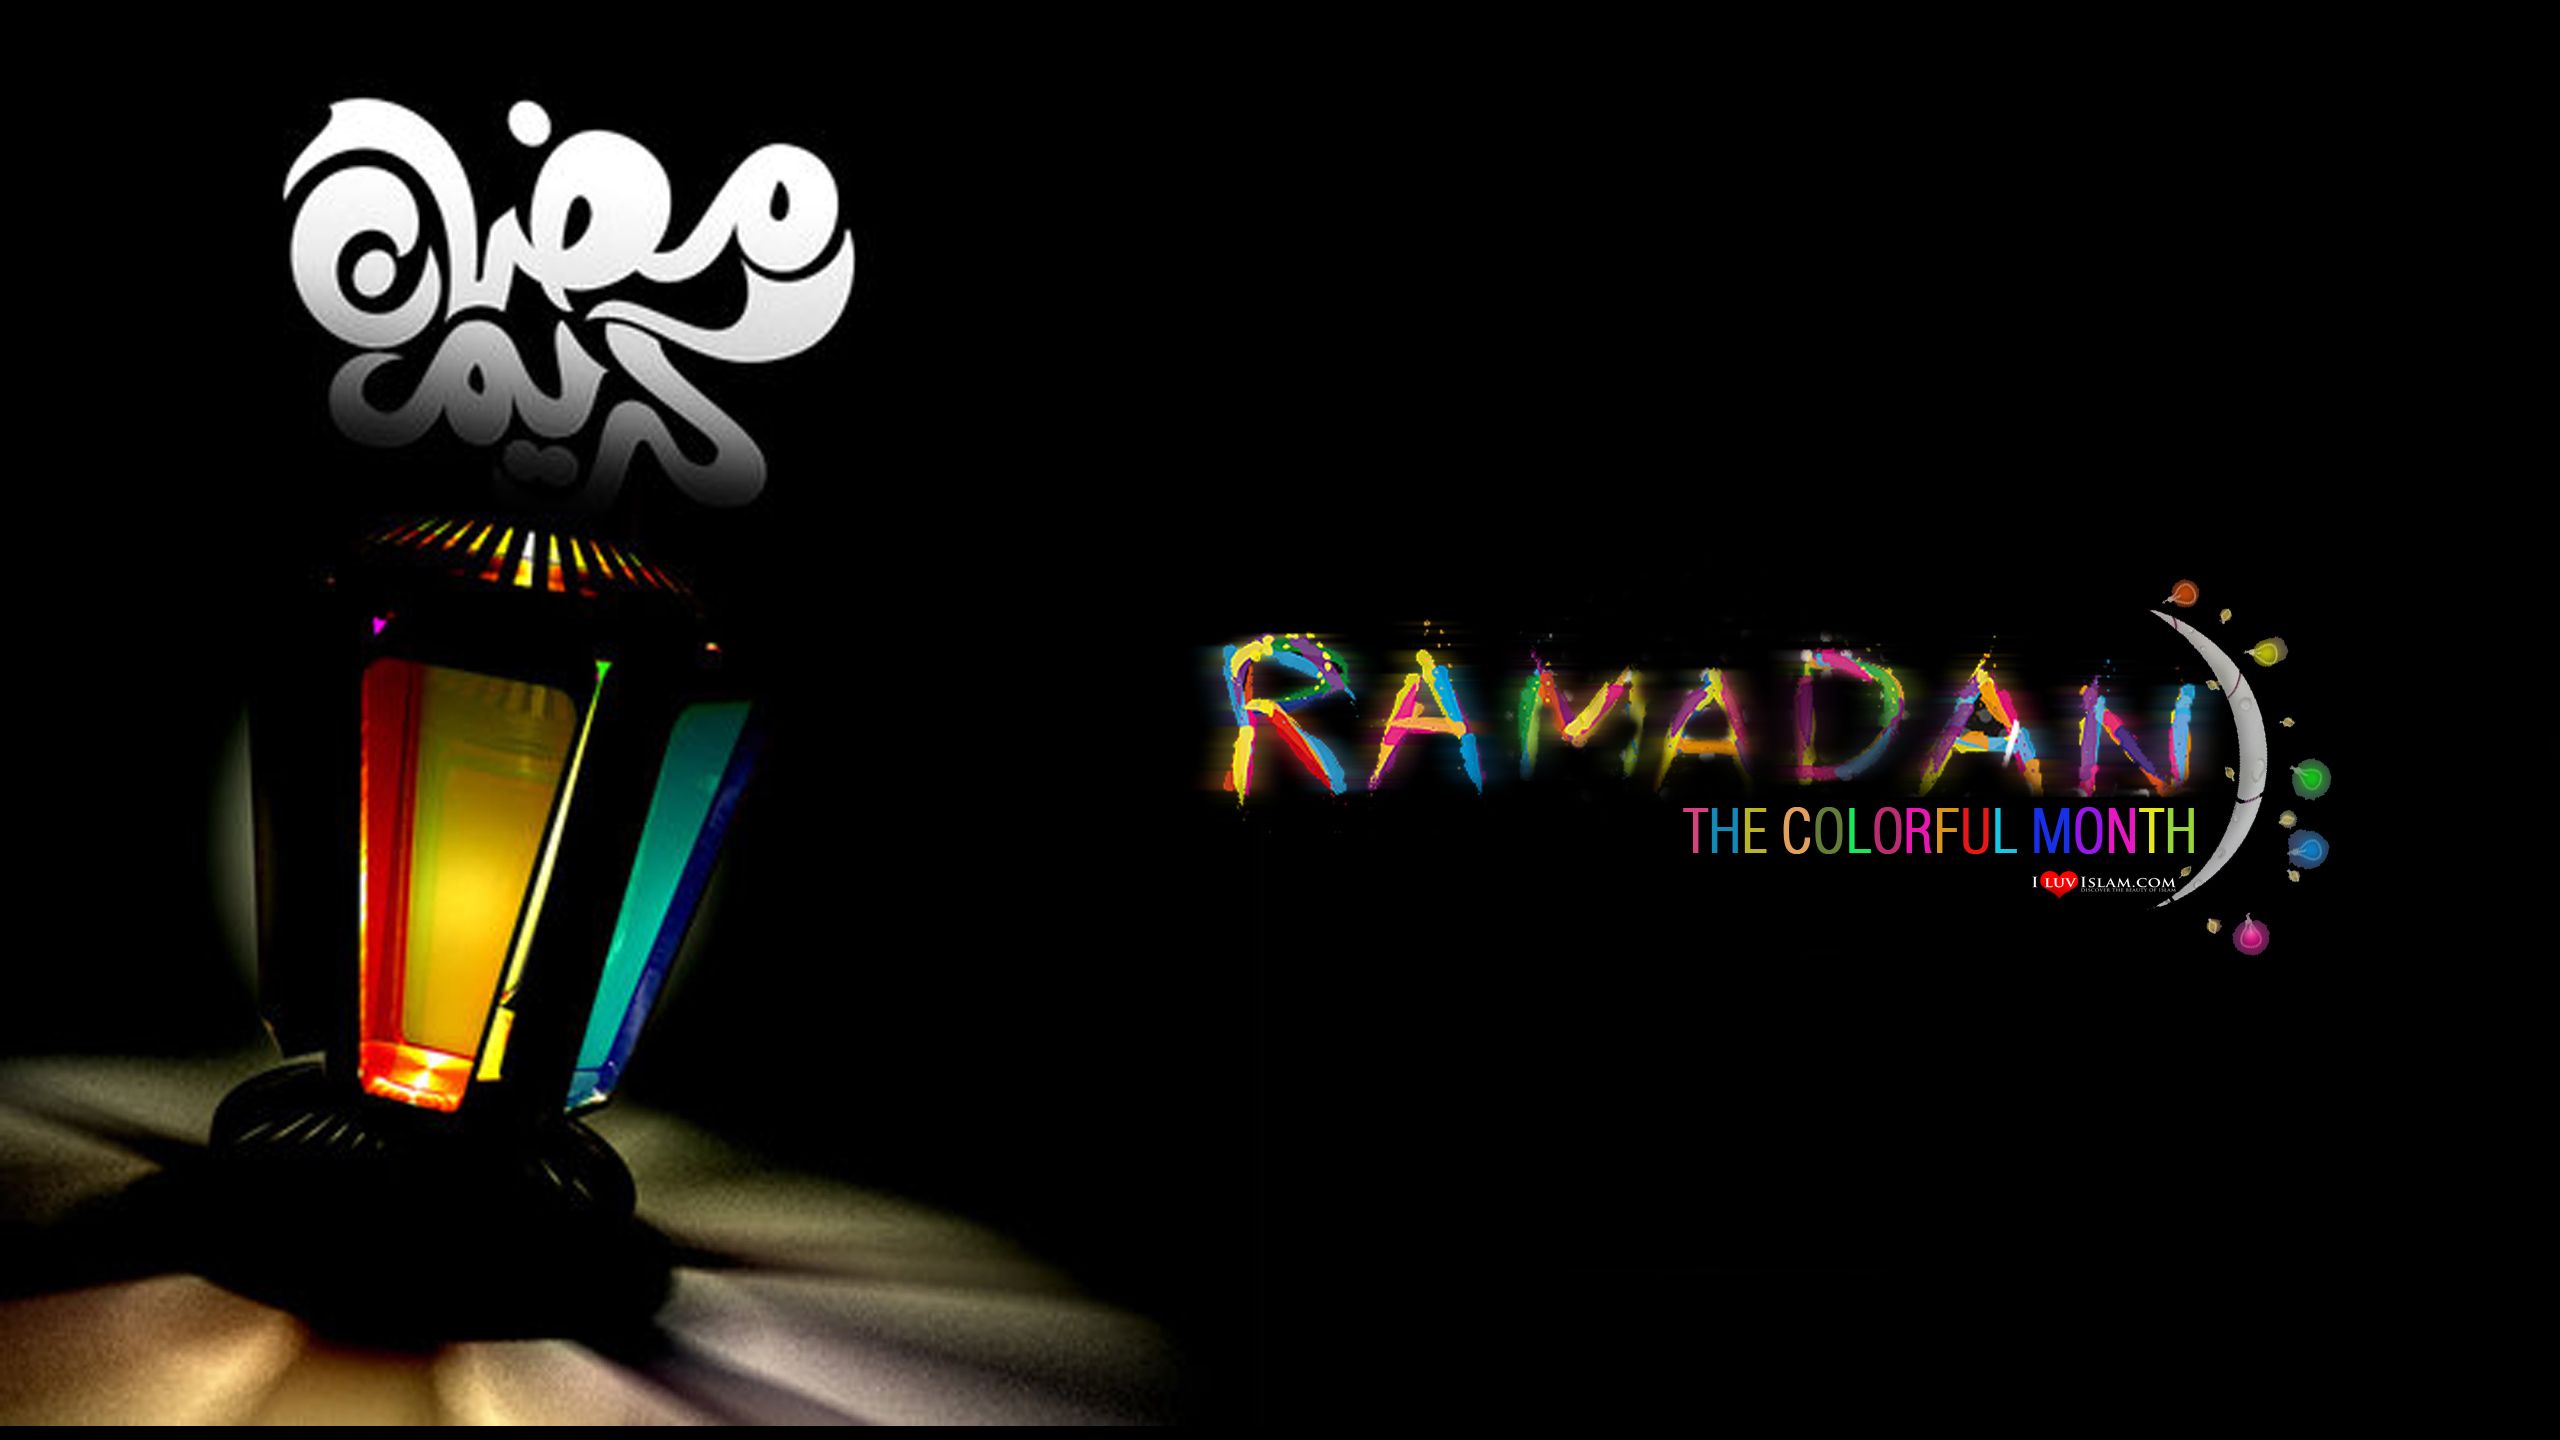 دعاء اليوم 10 من رمضان , HD Wallpaper & Backgrounds